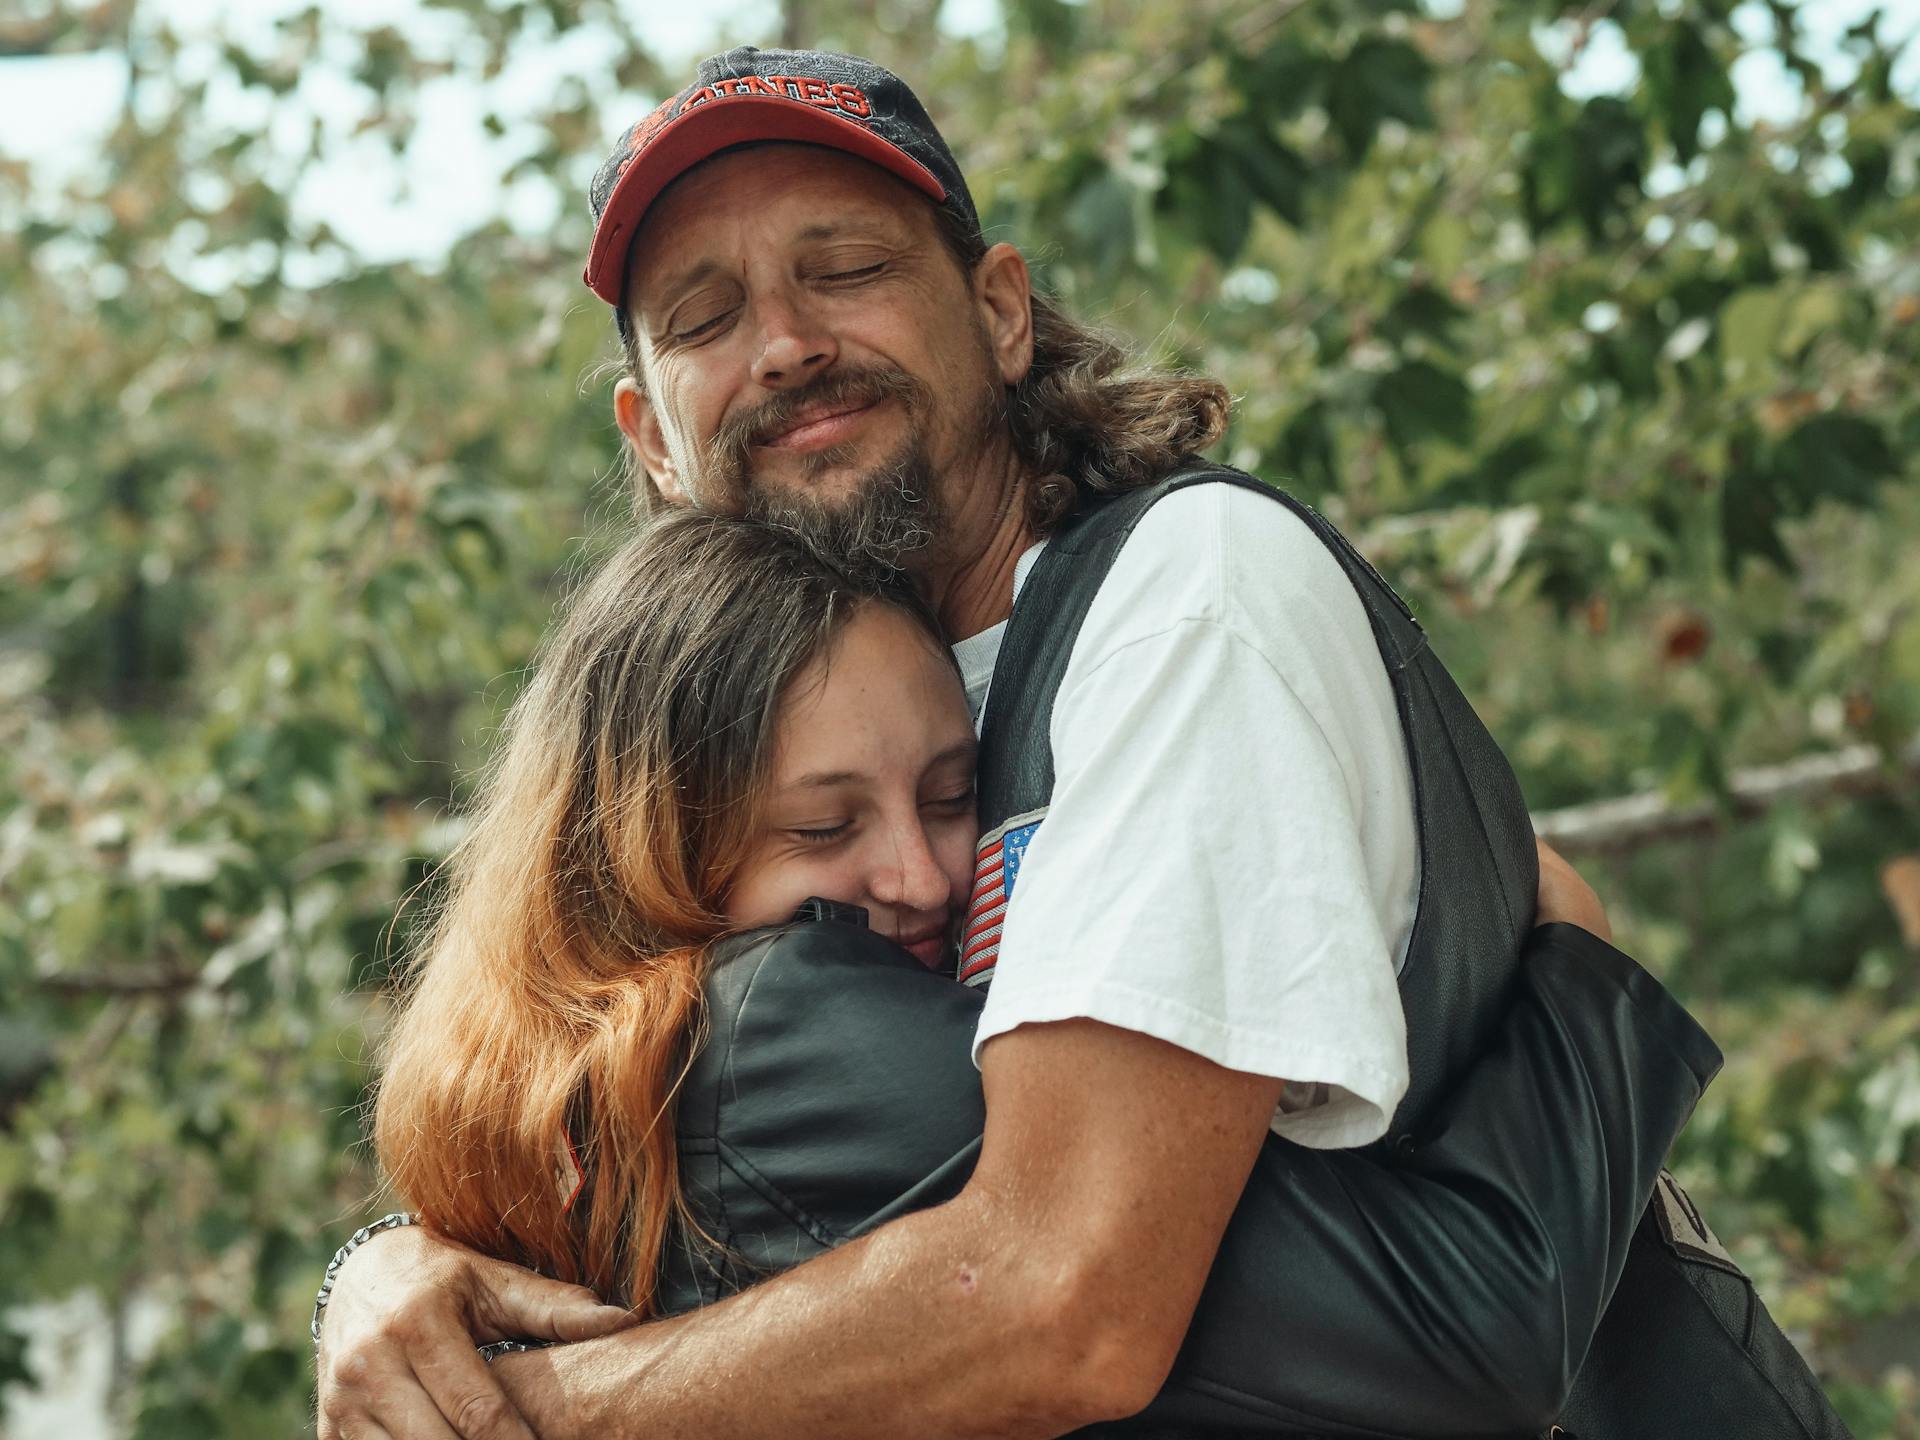 Una adolescente abrazando a su padre | Fuente: Pexels